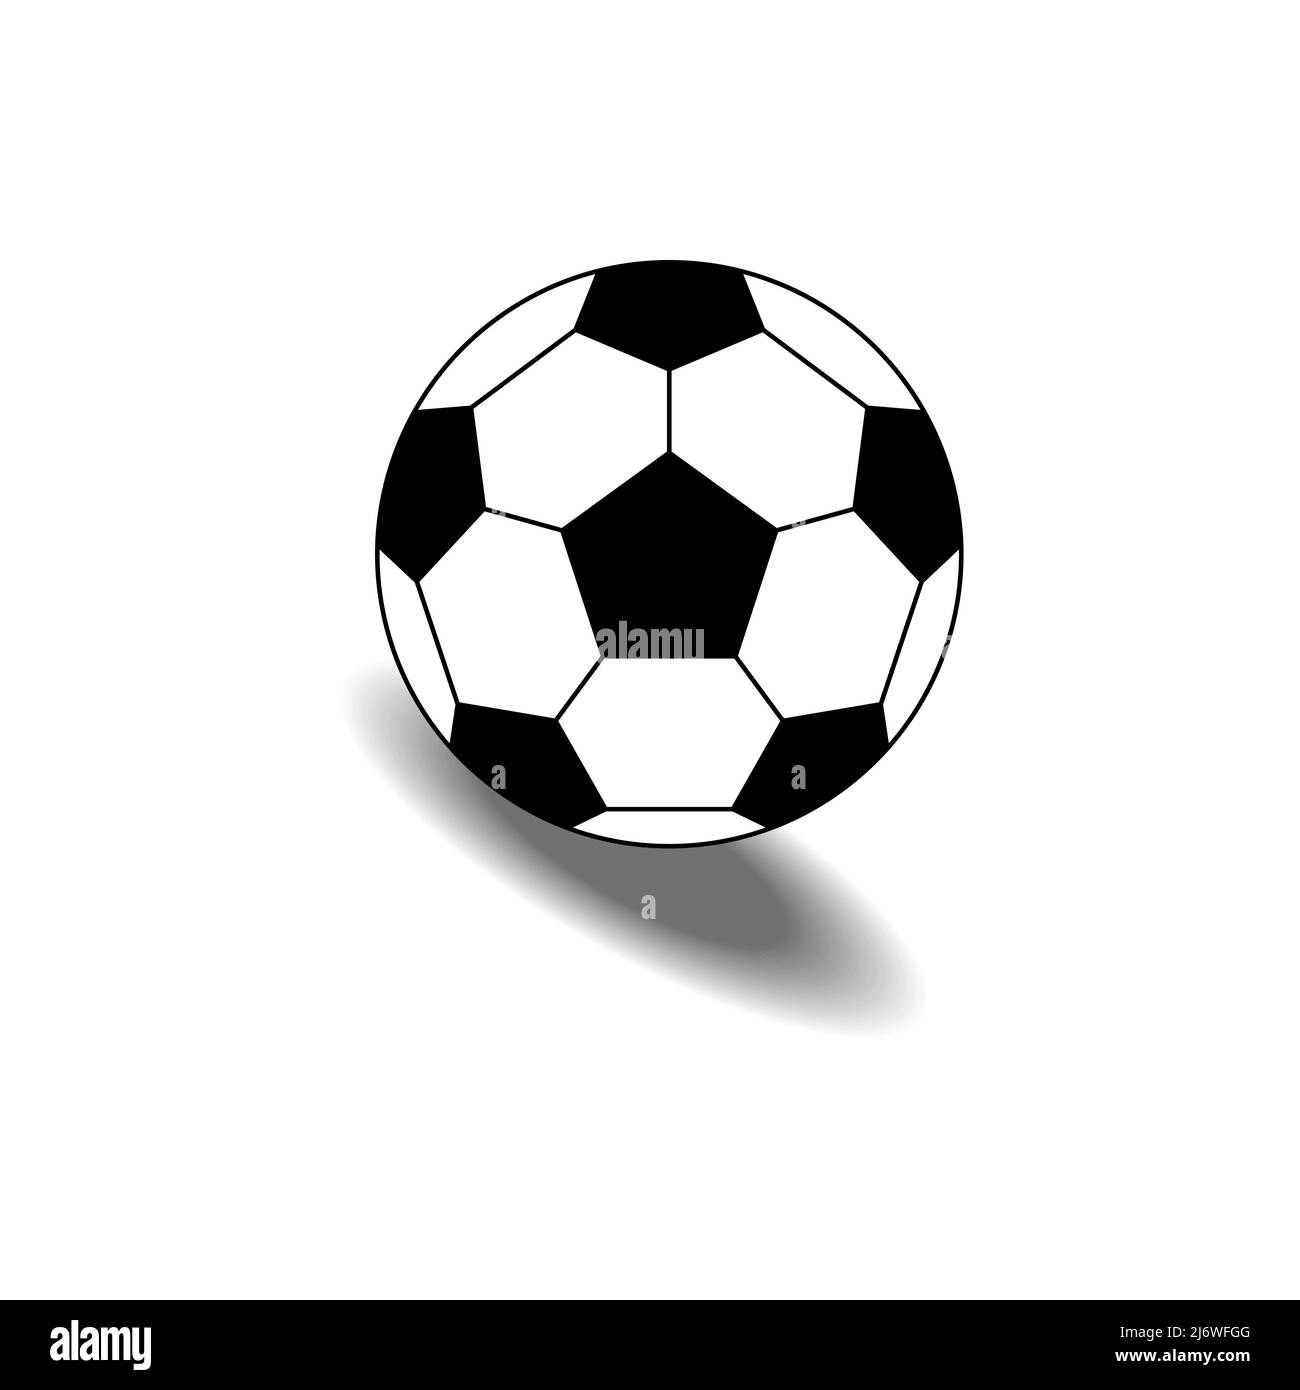 Ballon de football de forme sphérique avec ombre inclinée en dessous. Icône  ou logo de la taille 5 classique du ballon de football pour jouer au  football. Sphère à pois monochrome avec